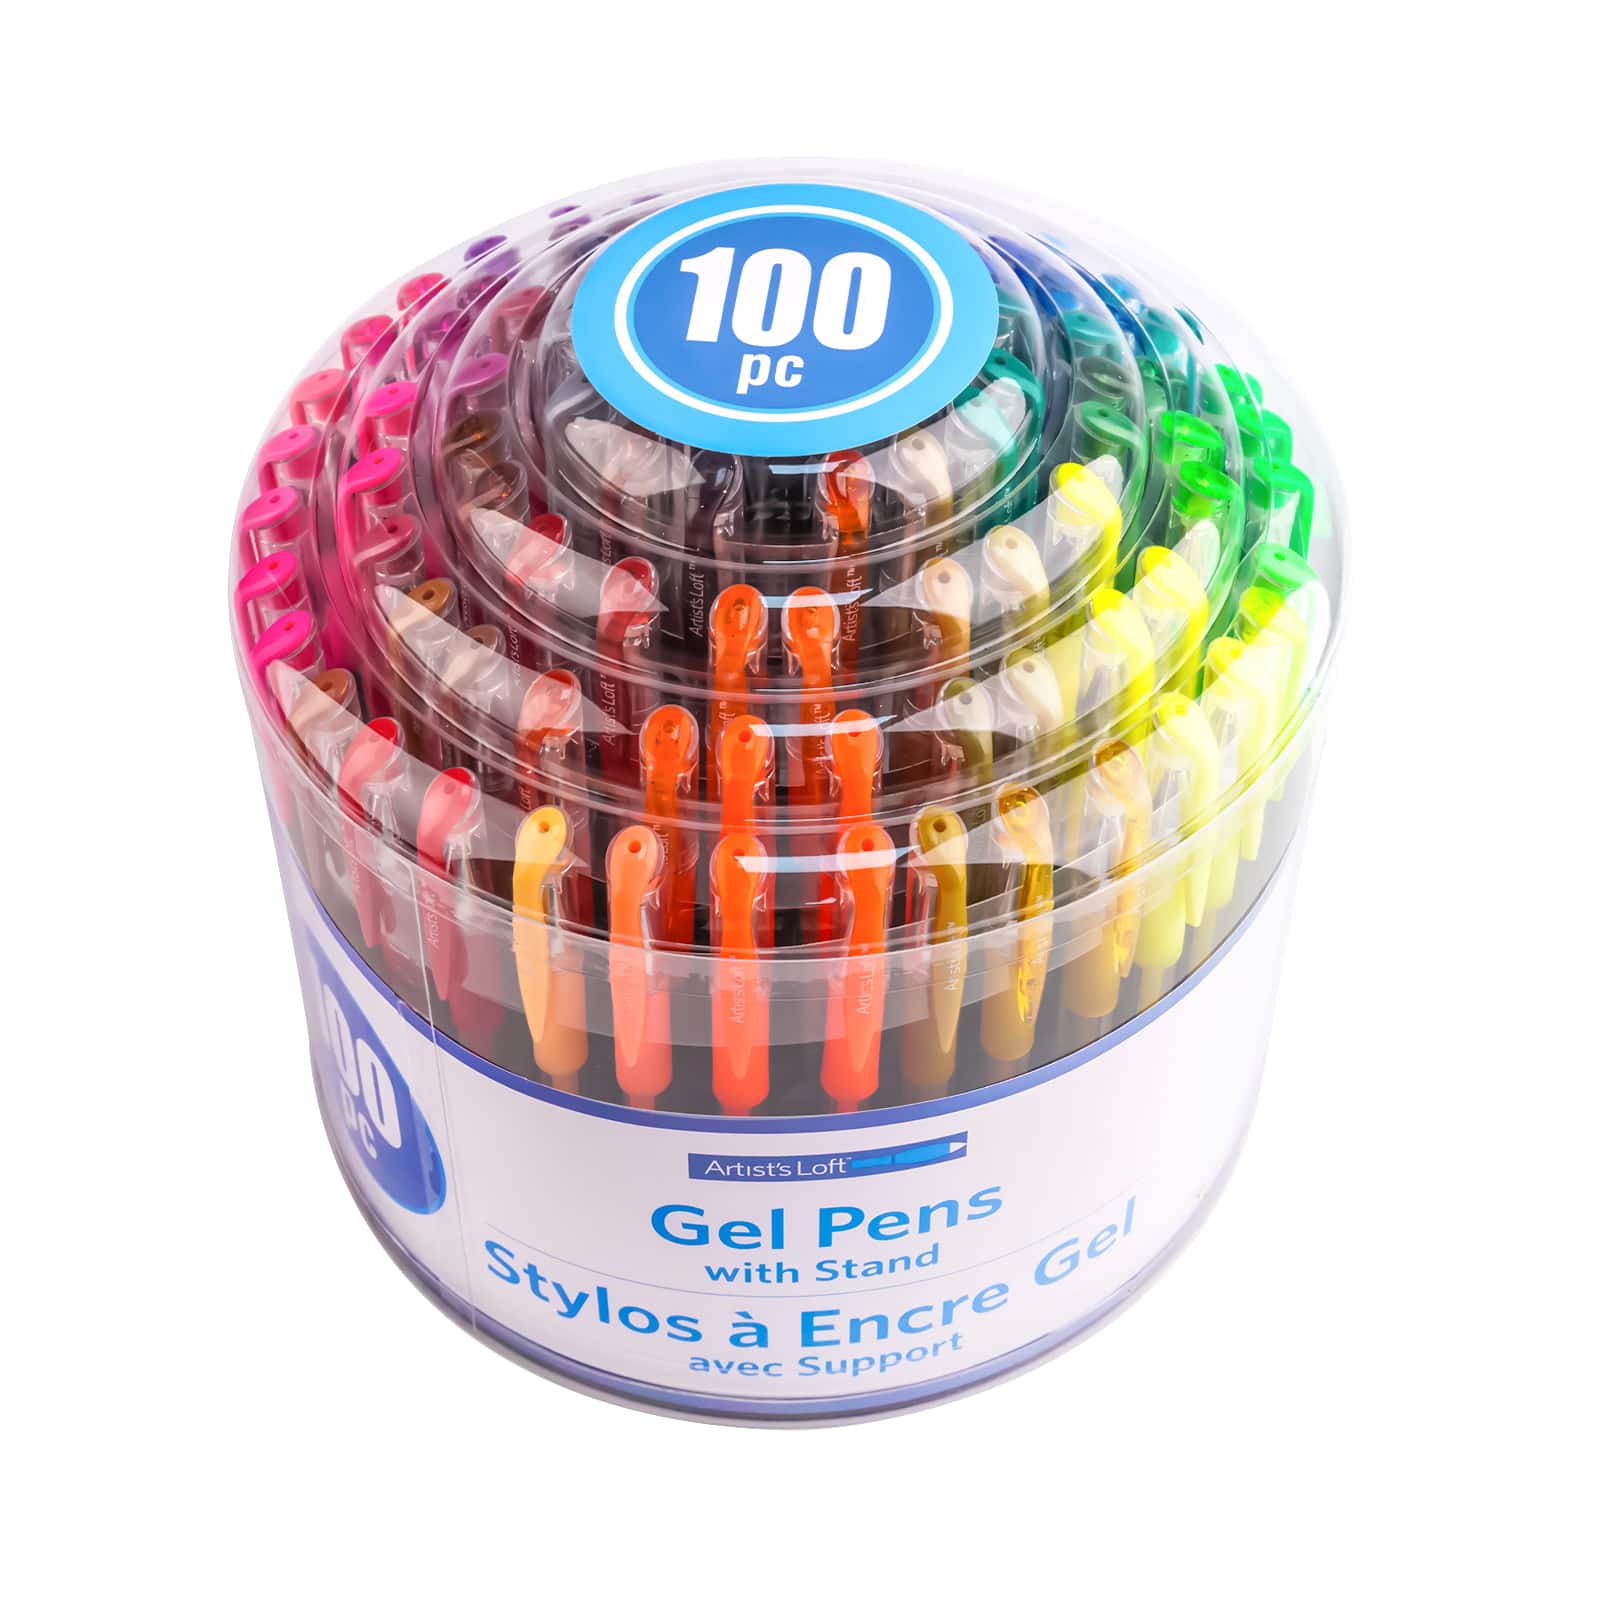 100 Piece Gel Pen Set with Case